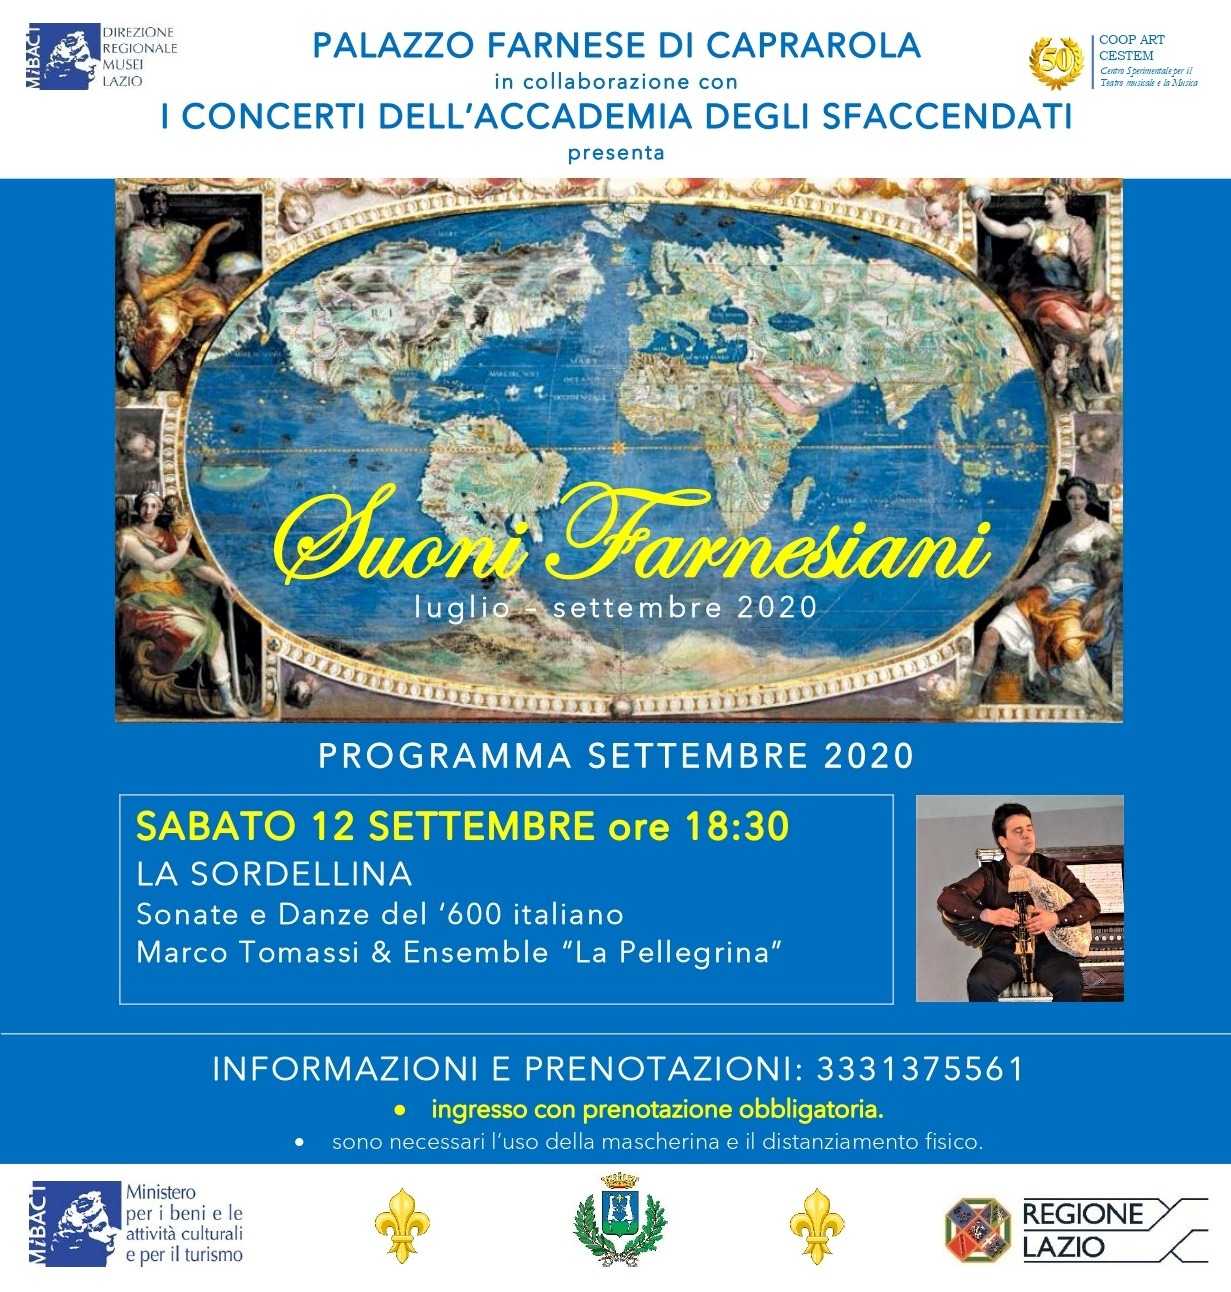 Sonate e Danze del ‘600 italiano al Palazzo Farnese di Caprarola con la SORDELLINA e l’Ensemble “La Pellegrina”